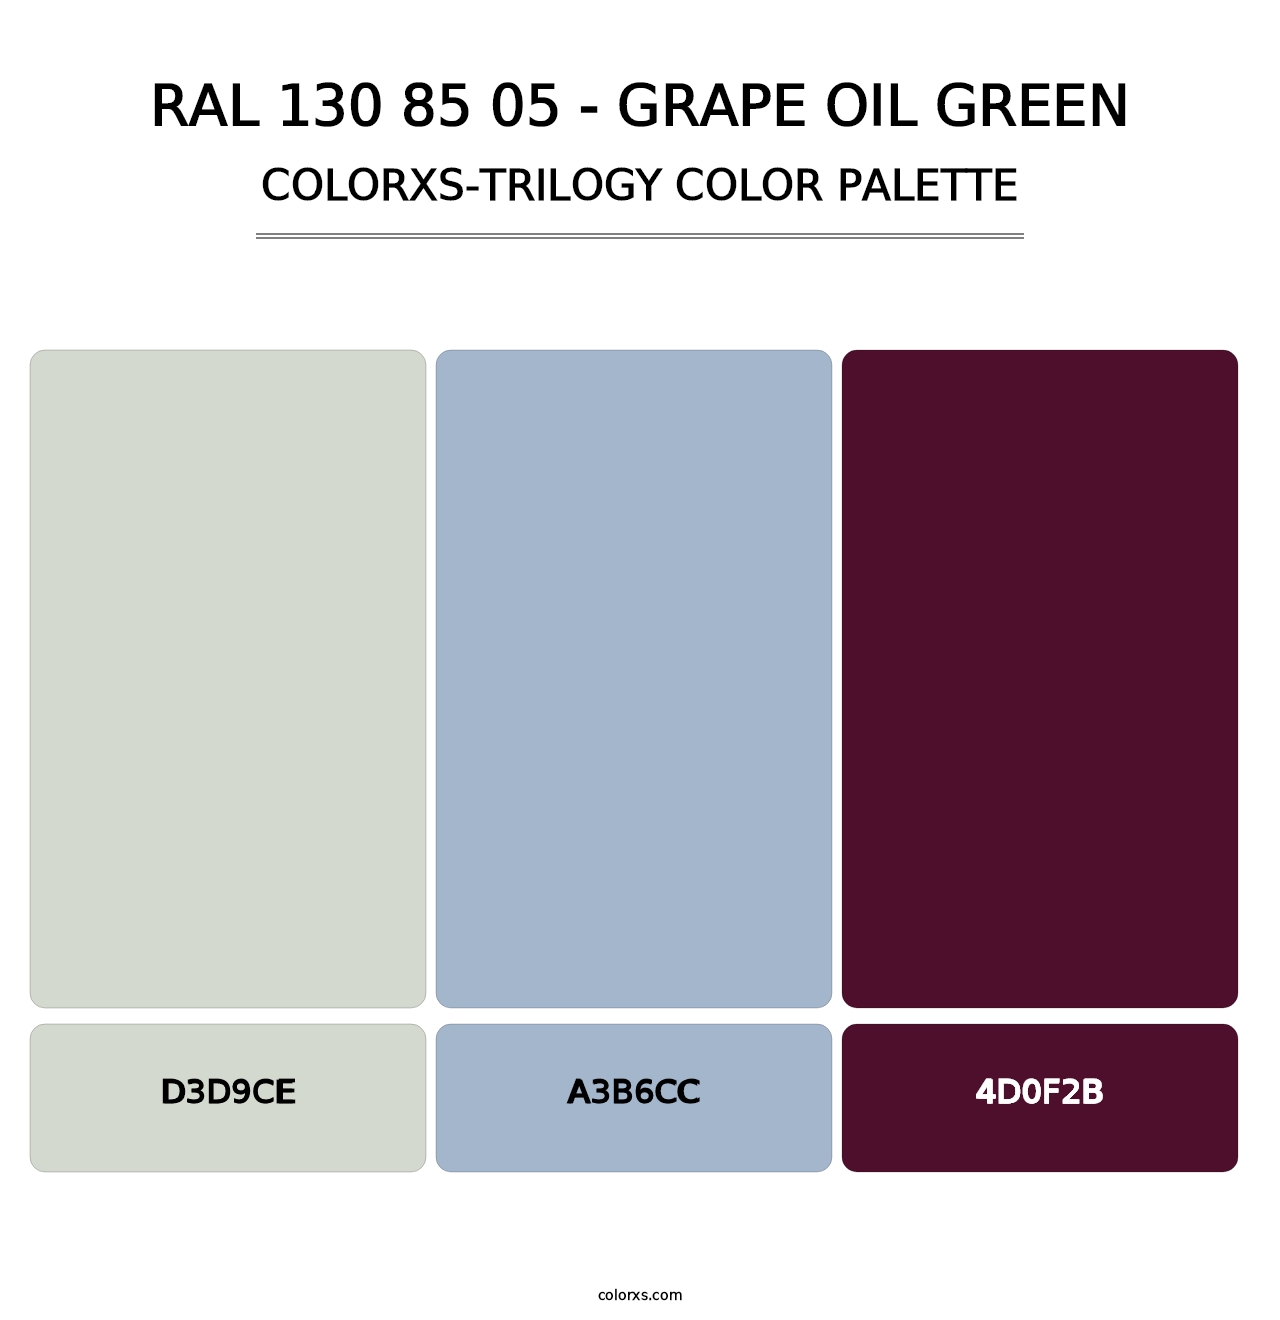 RAL 130 85 05 - Grape Oil Green - Colorxs Trilogy Palette